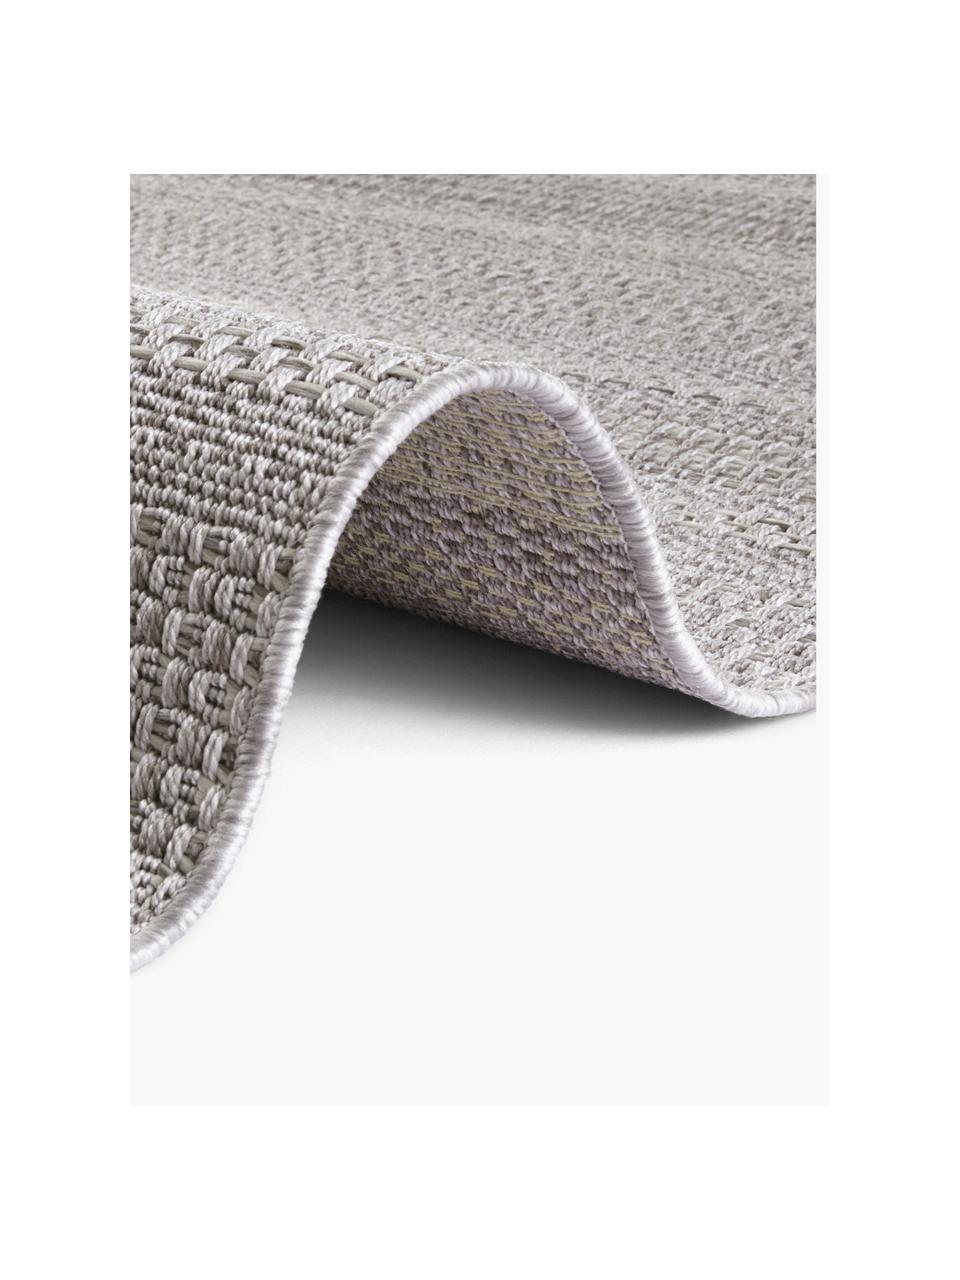 Interiérový/exteriérový koberec Arras, 100 % polypropylen

Materiál použitý v tomto produktu byl testován na škodlivé látky a certifikován podle STANDARD 100 od OEKO-TEX® 1803035, OEKO-TEX Service GmbH., Odstíny šedé, Š 80 cm, D 150 cm (velikost XS)